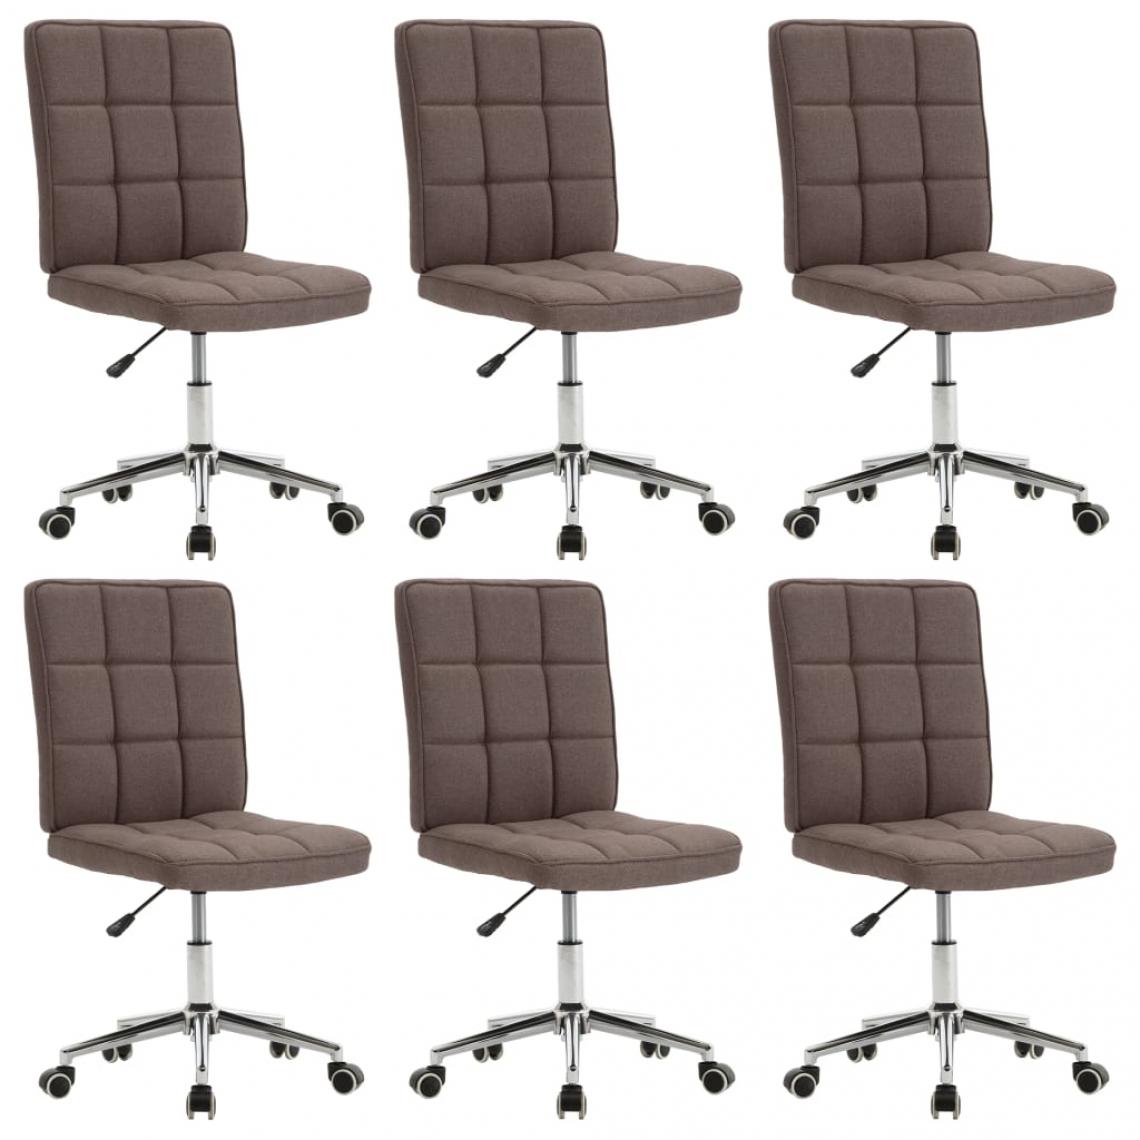 Decoshop26 - Lot de 6 chaises de salle à manger cuisine design moderne tissu taupe CDS022862 - Chaises